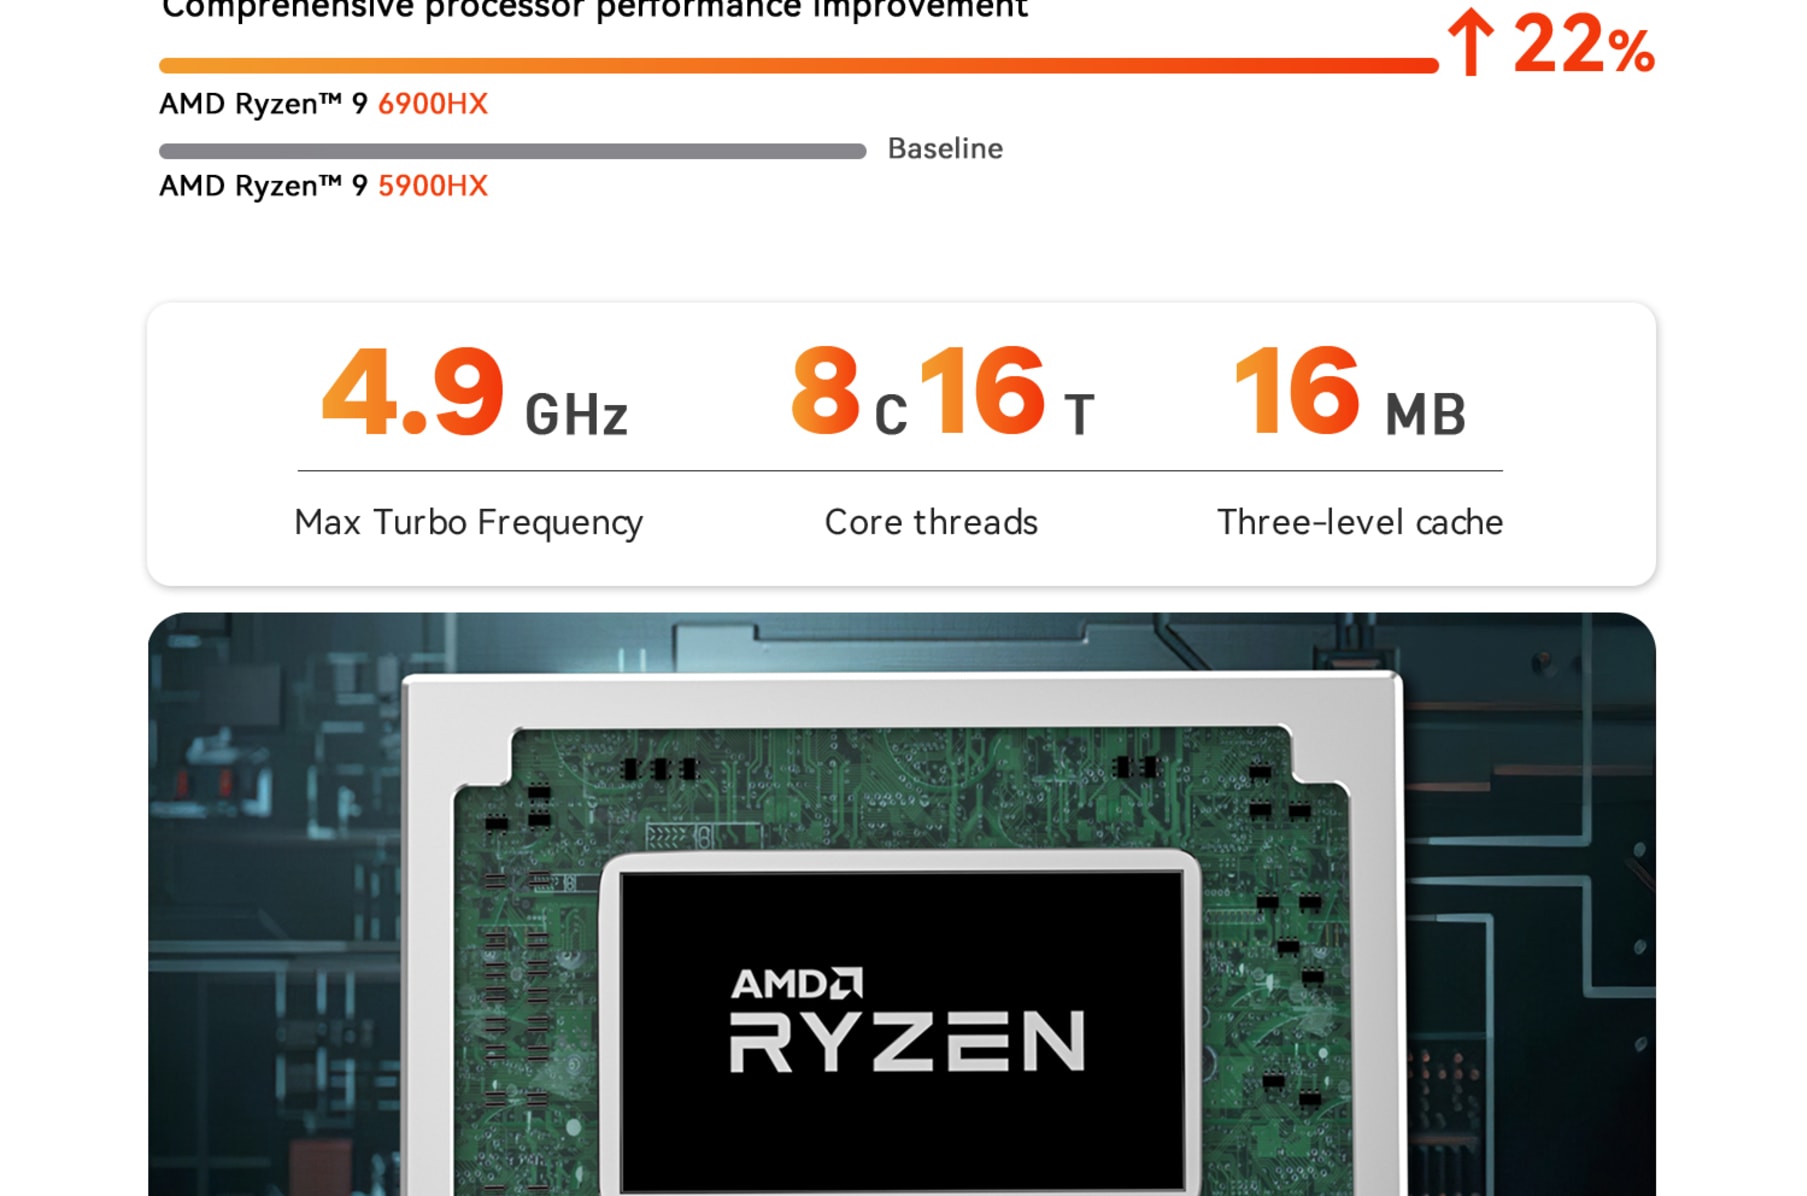 Beelink Mini PC SER6 AMD Ryzen 9 6900HX (8C/16T Up to 4.9GHz